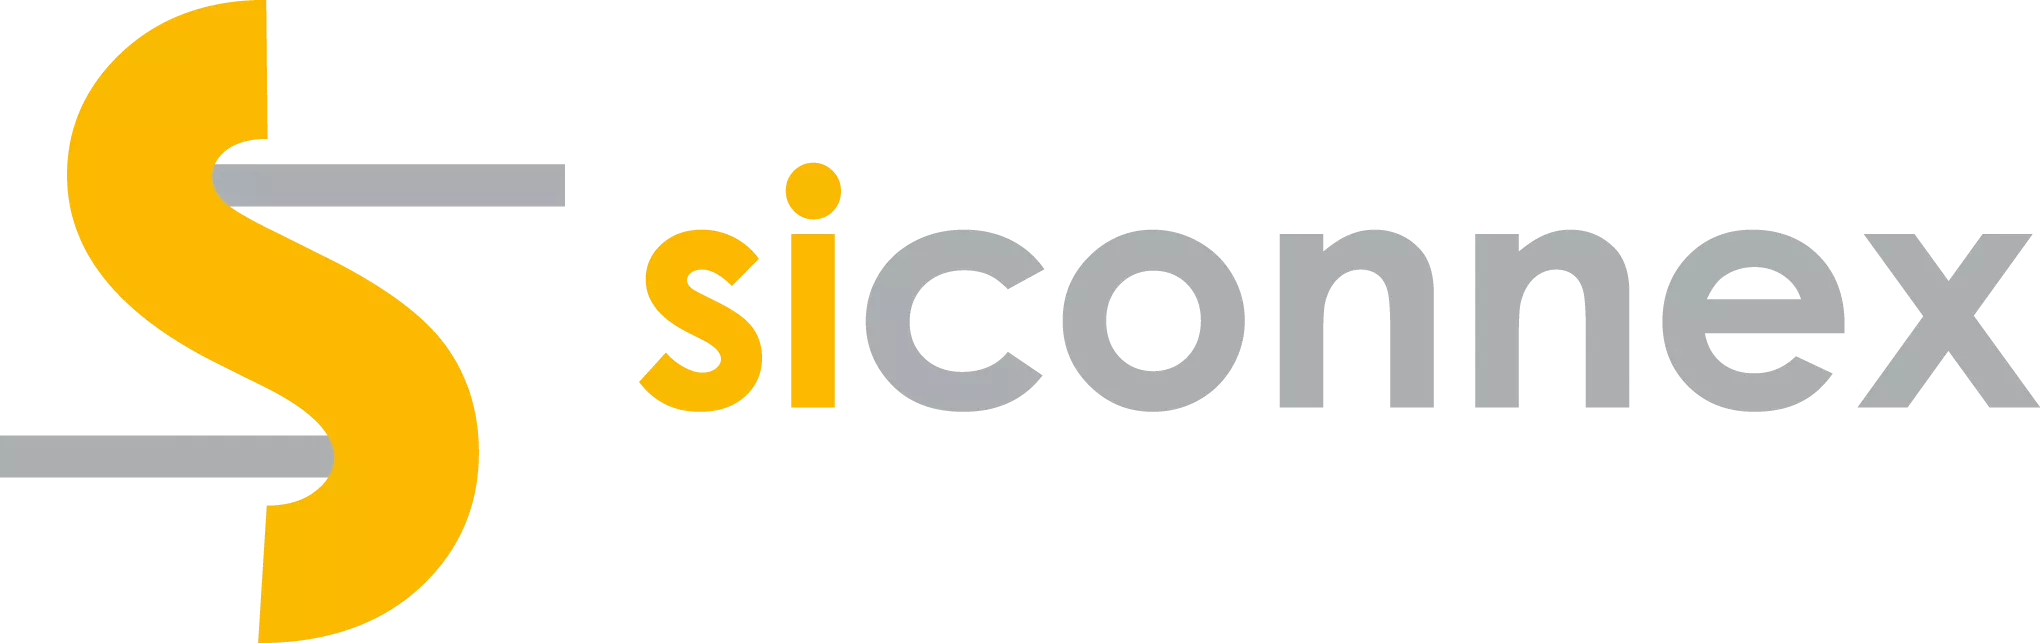 Siconnex